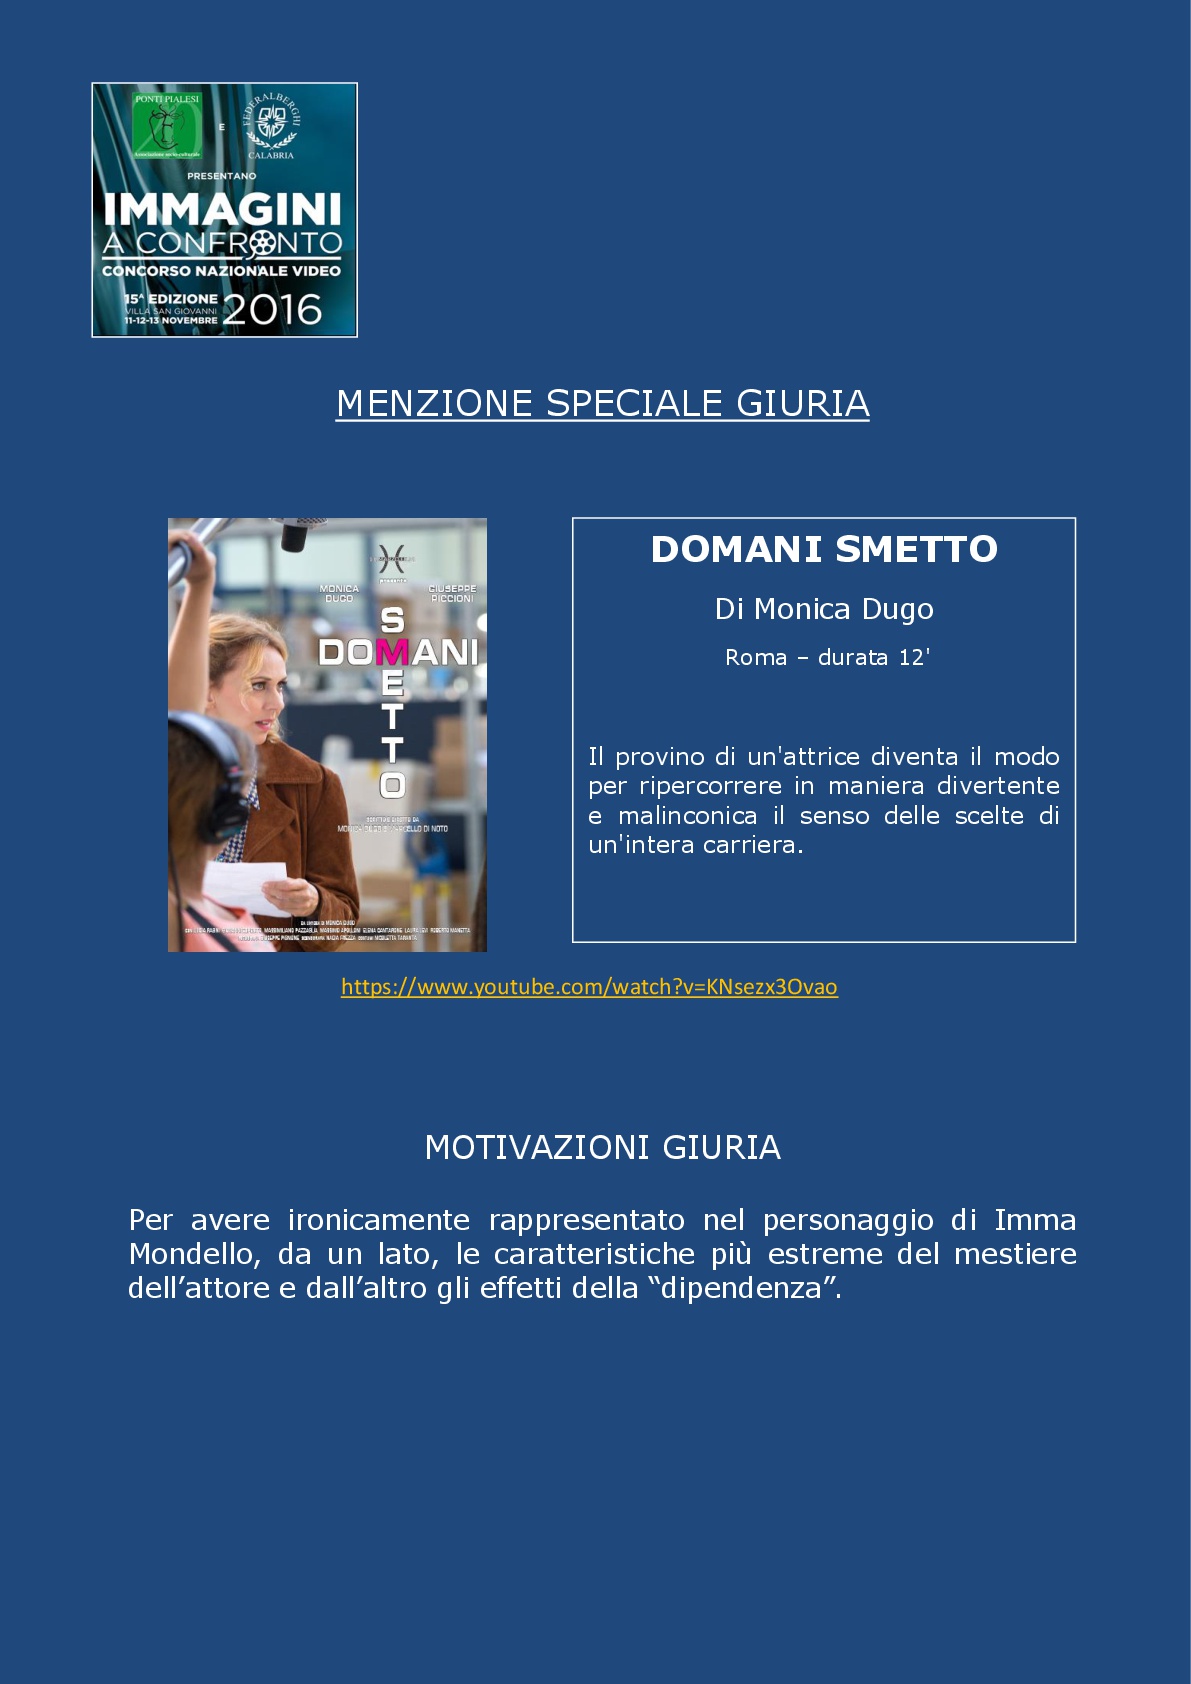 PONTI PIALESI - 15a Edizione IMMAGINI A CONFRONTO 2016 - PREMIAZIONI (6)